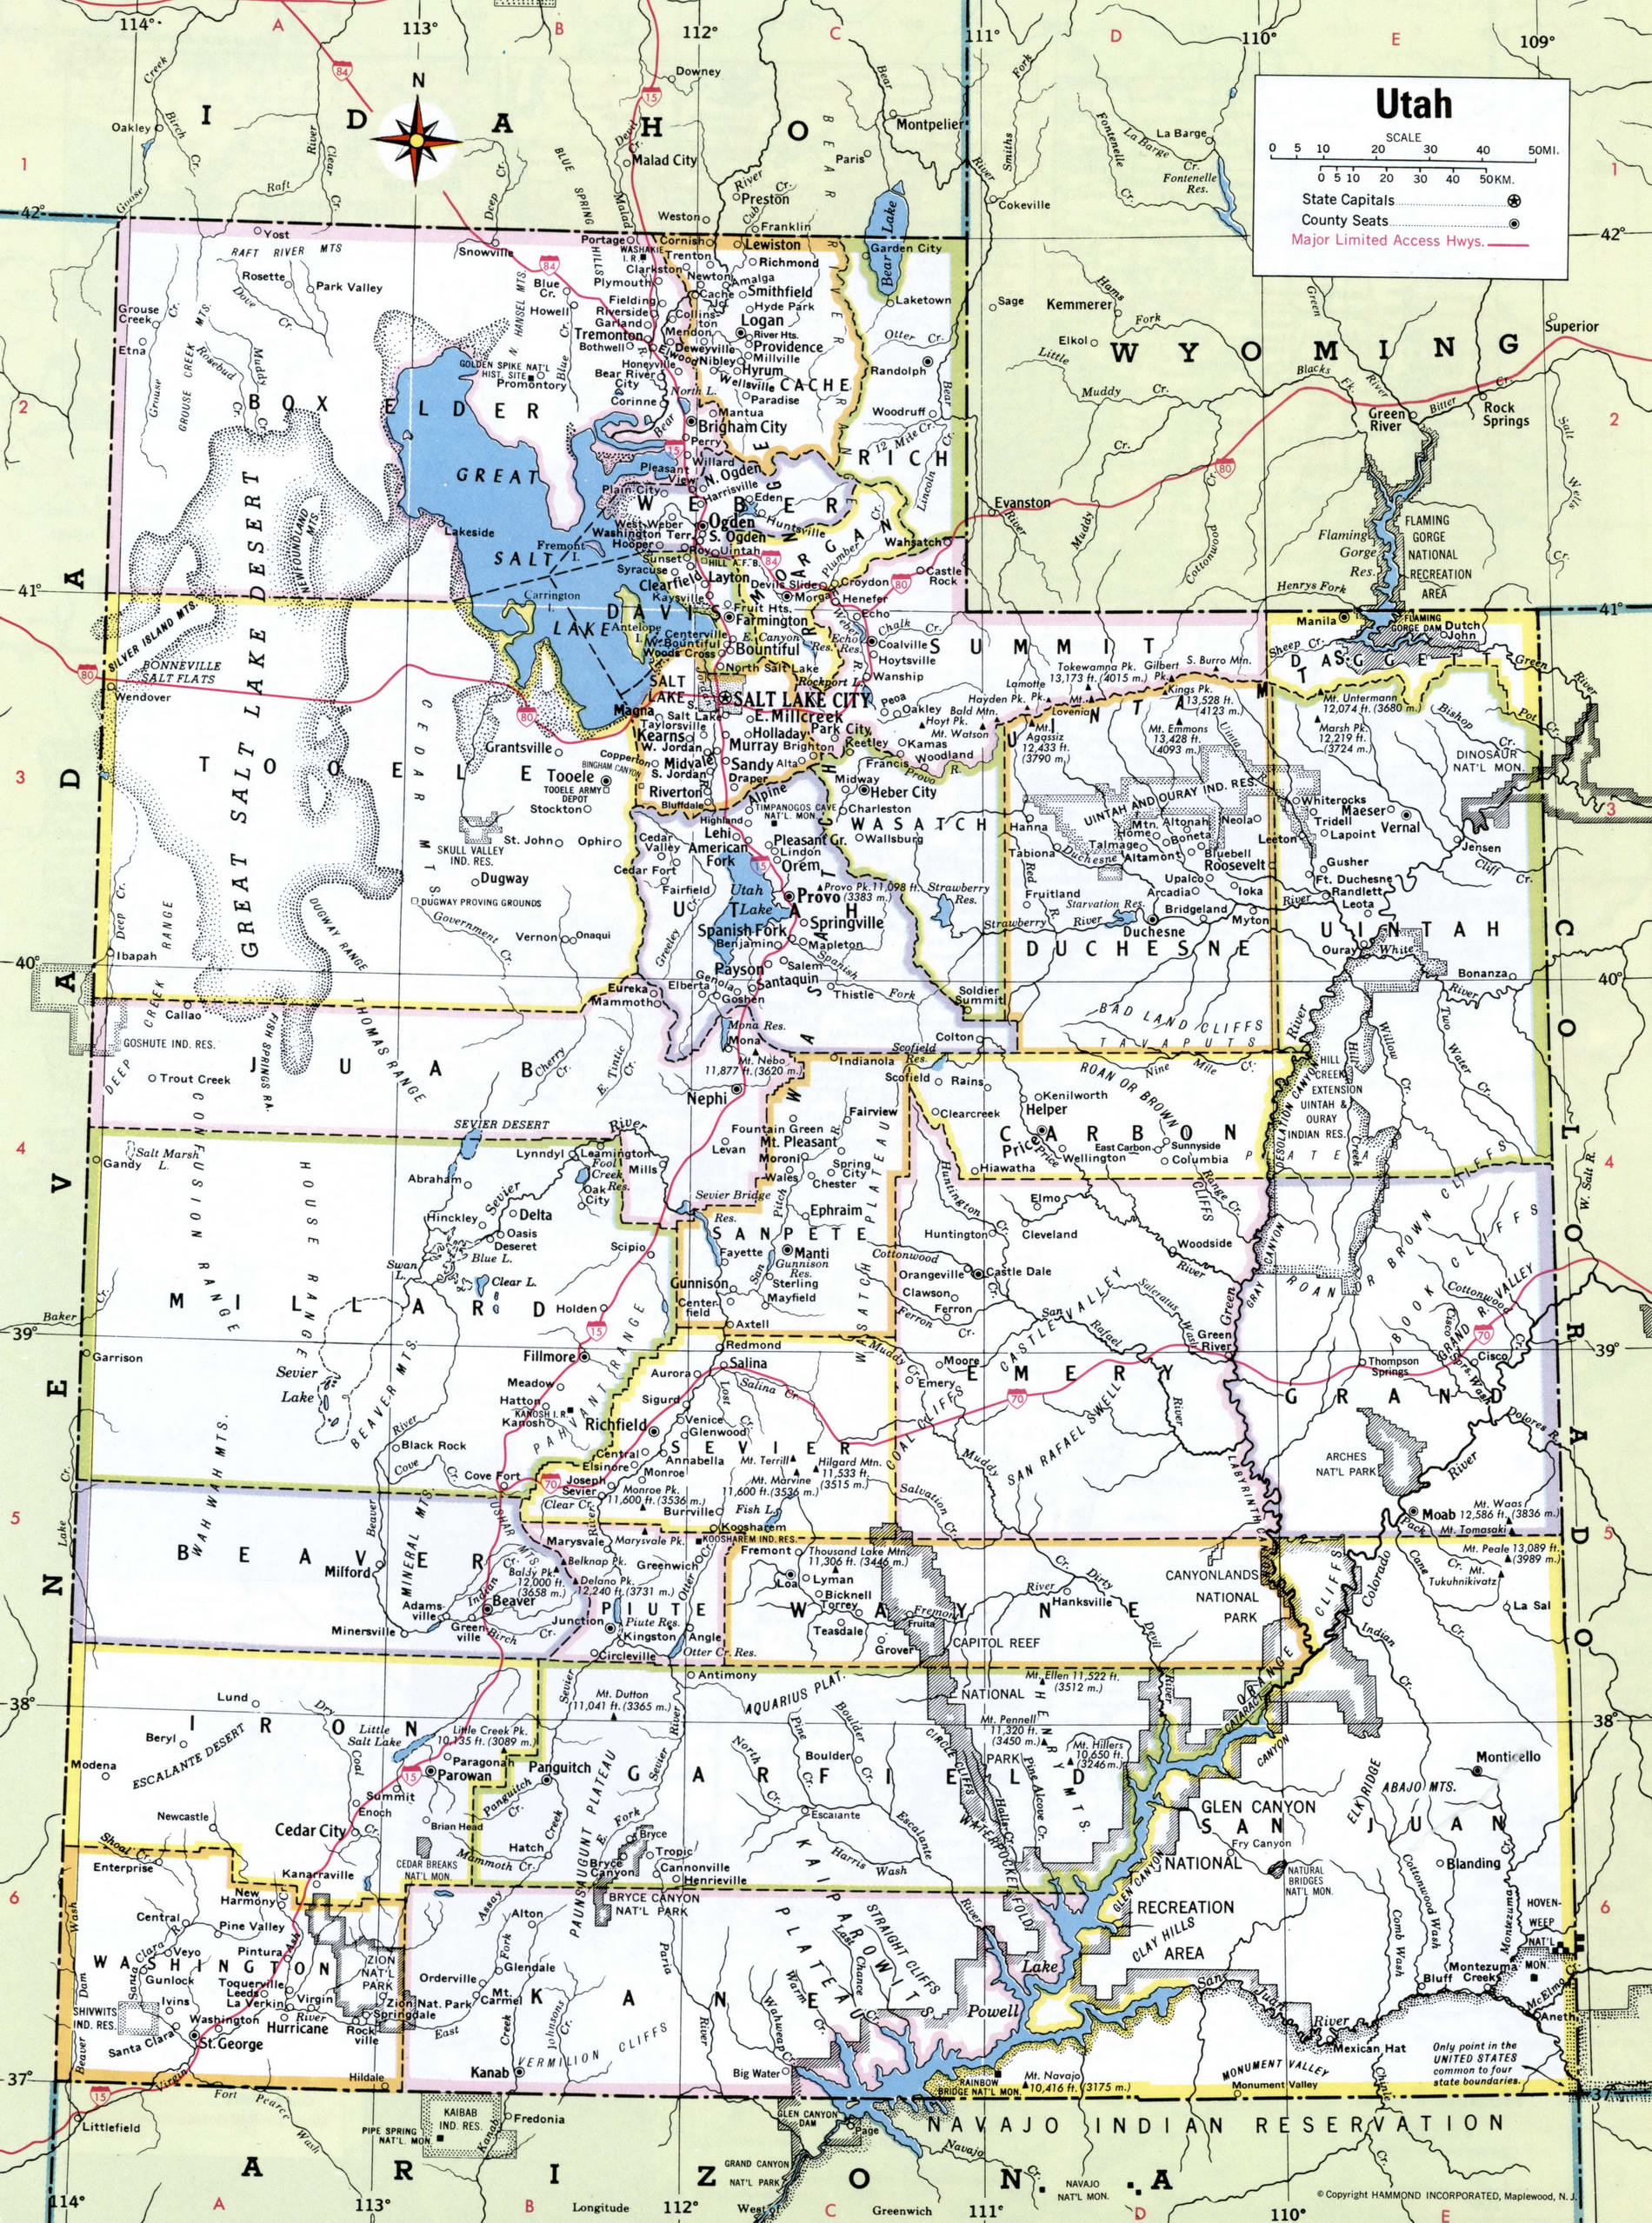 Counties of Utah state